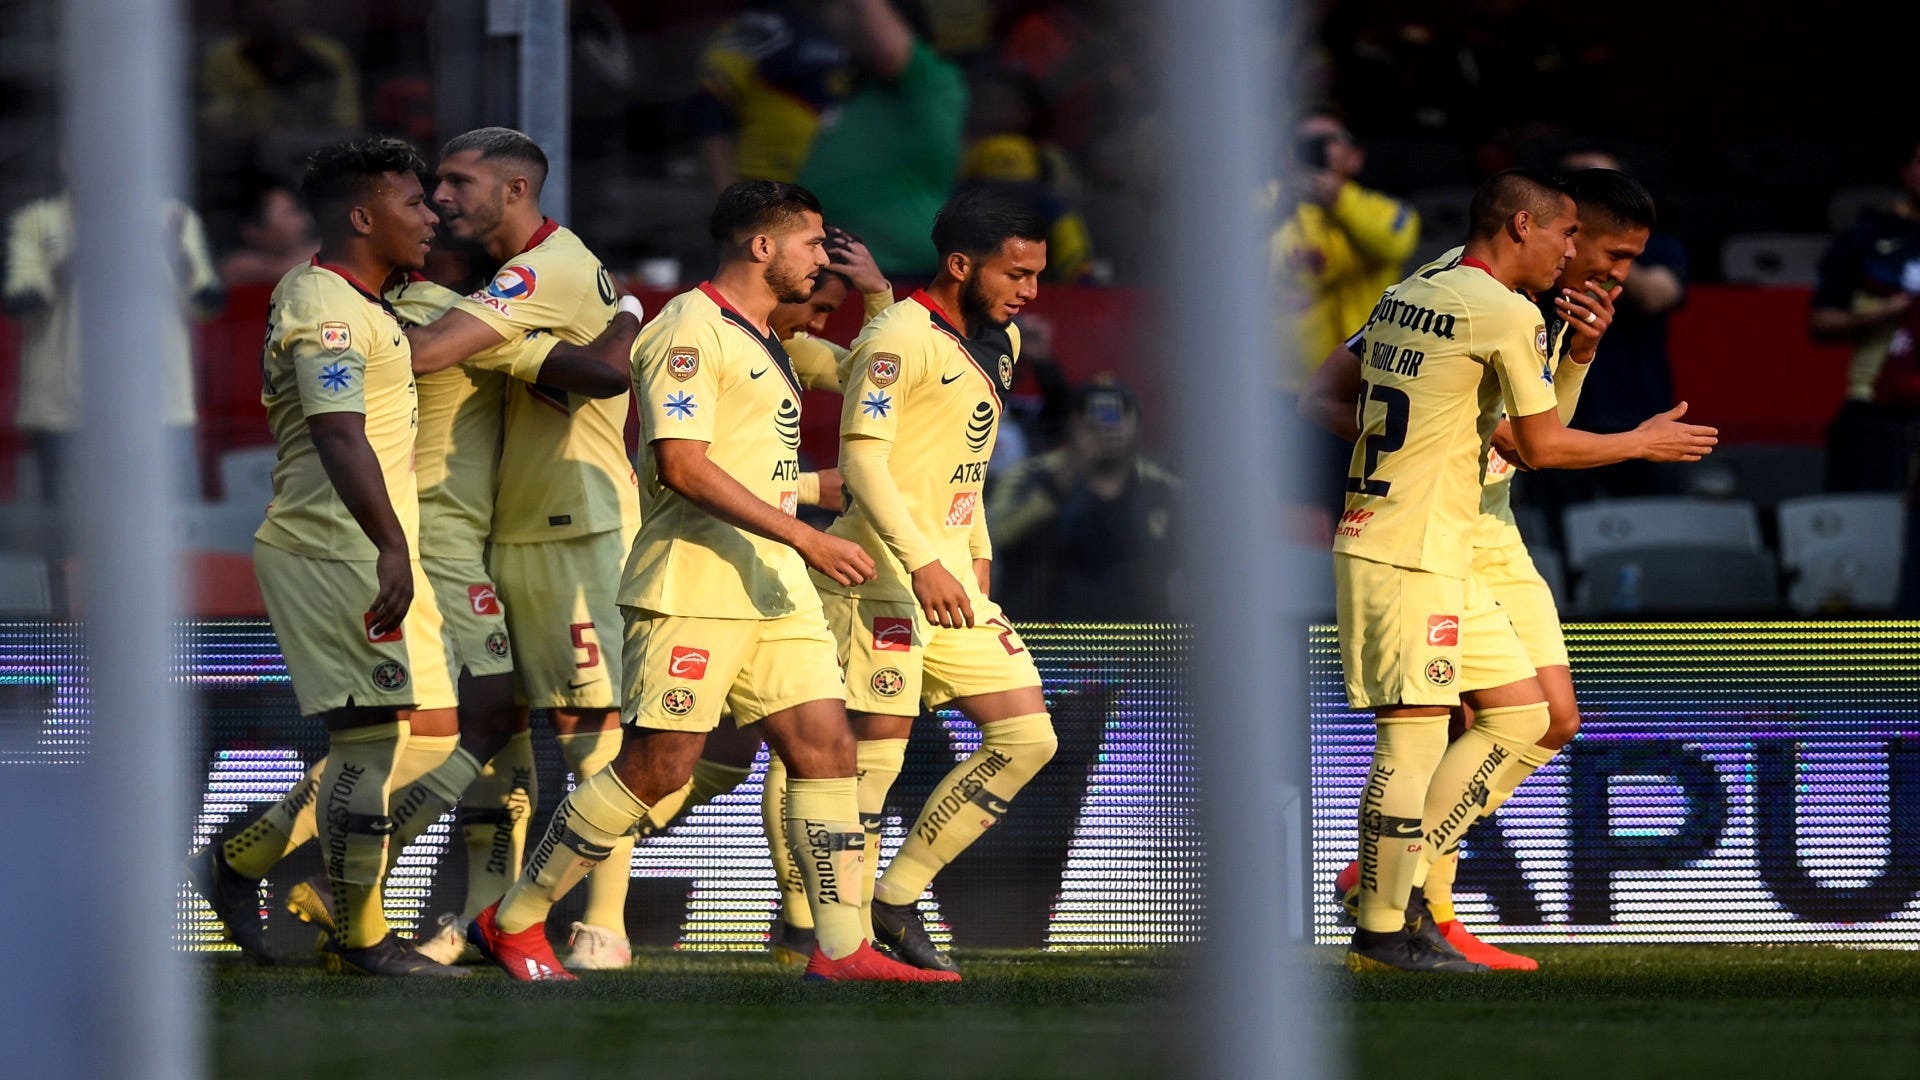 Cómo en vivo América vs Morelia, por el Clausura 2019: internet y canal de TV | Goal.com Espana